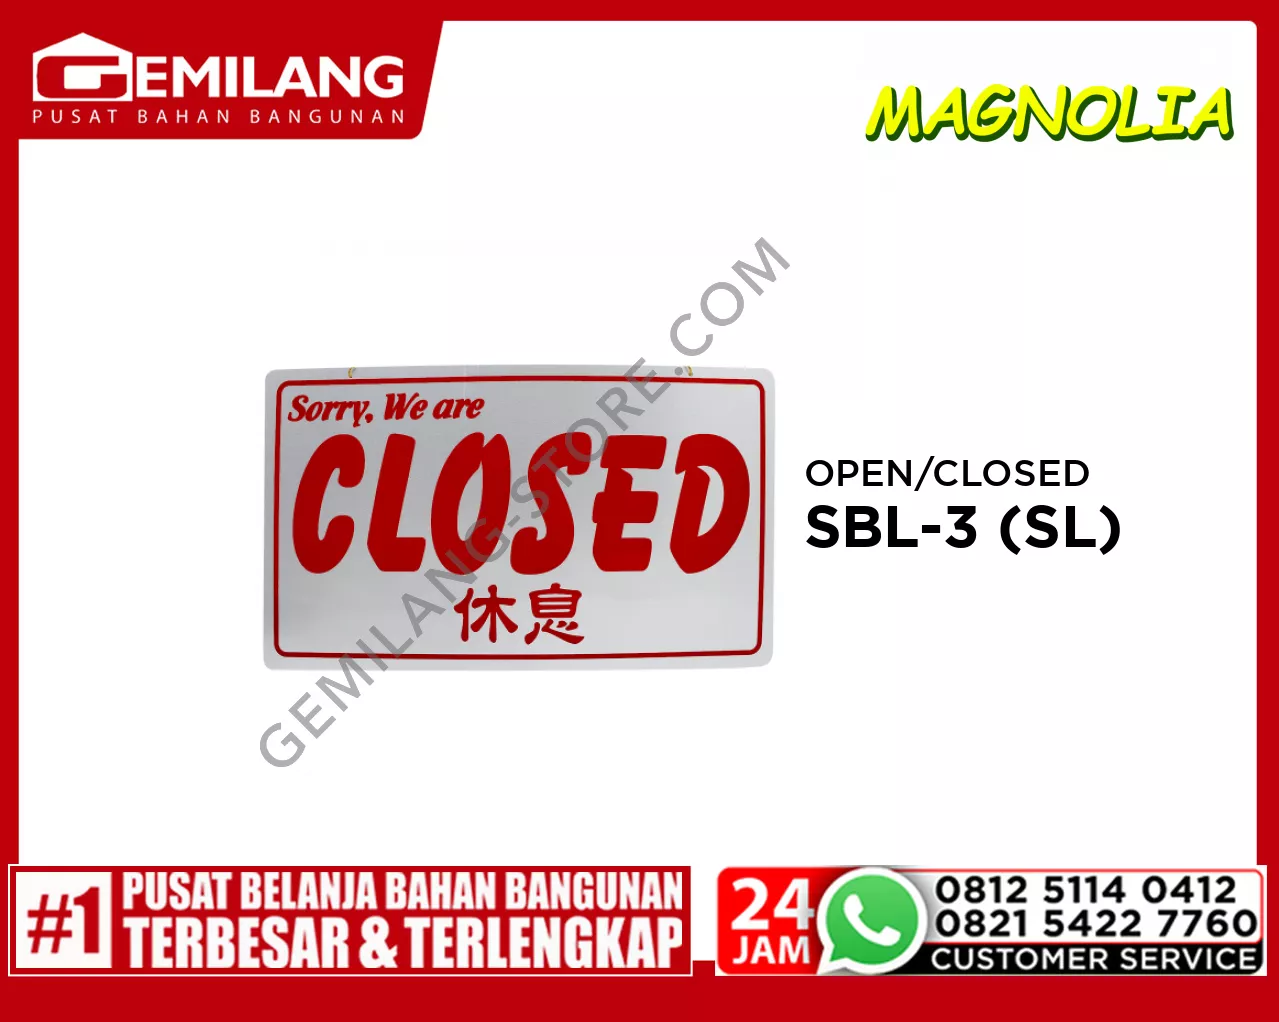 OPEN/CLOSED SBL-3 (SL)